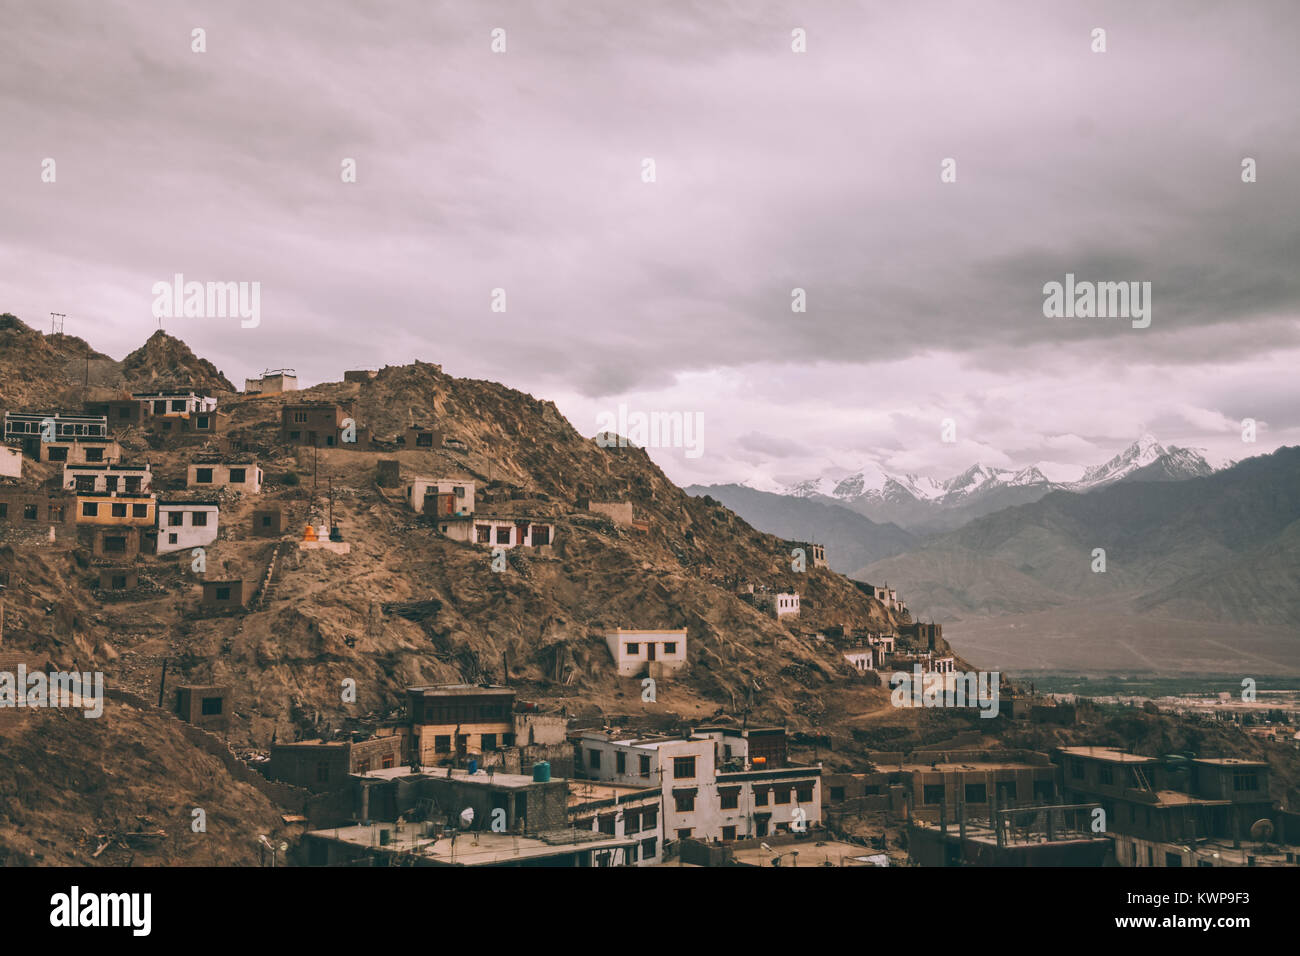 La ville de Leh cityscape in Himalaya Indien Banque D'Images